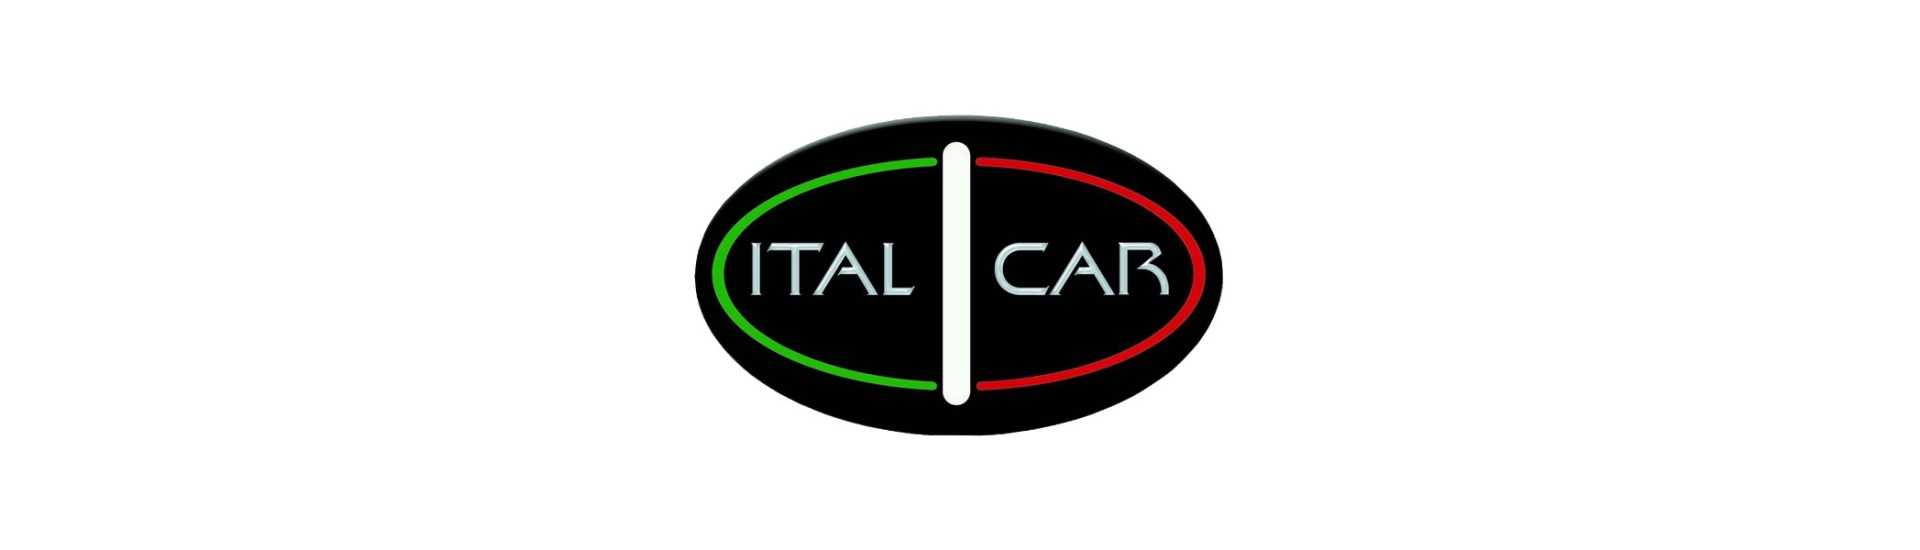 Deflector de aire al mejor precio para coches sin carnet Italcar